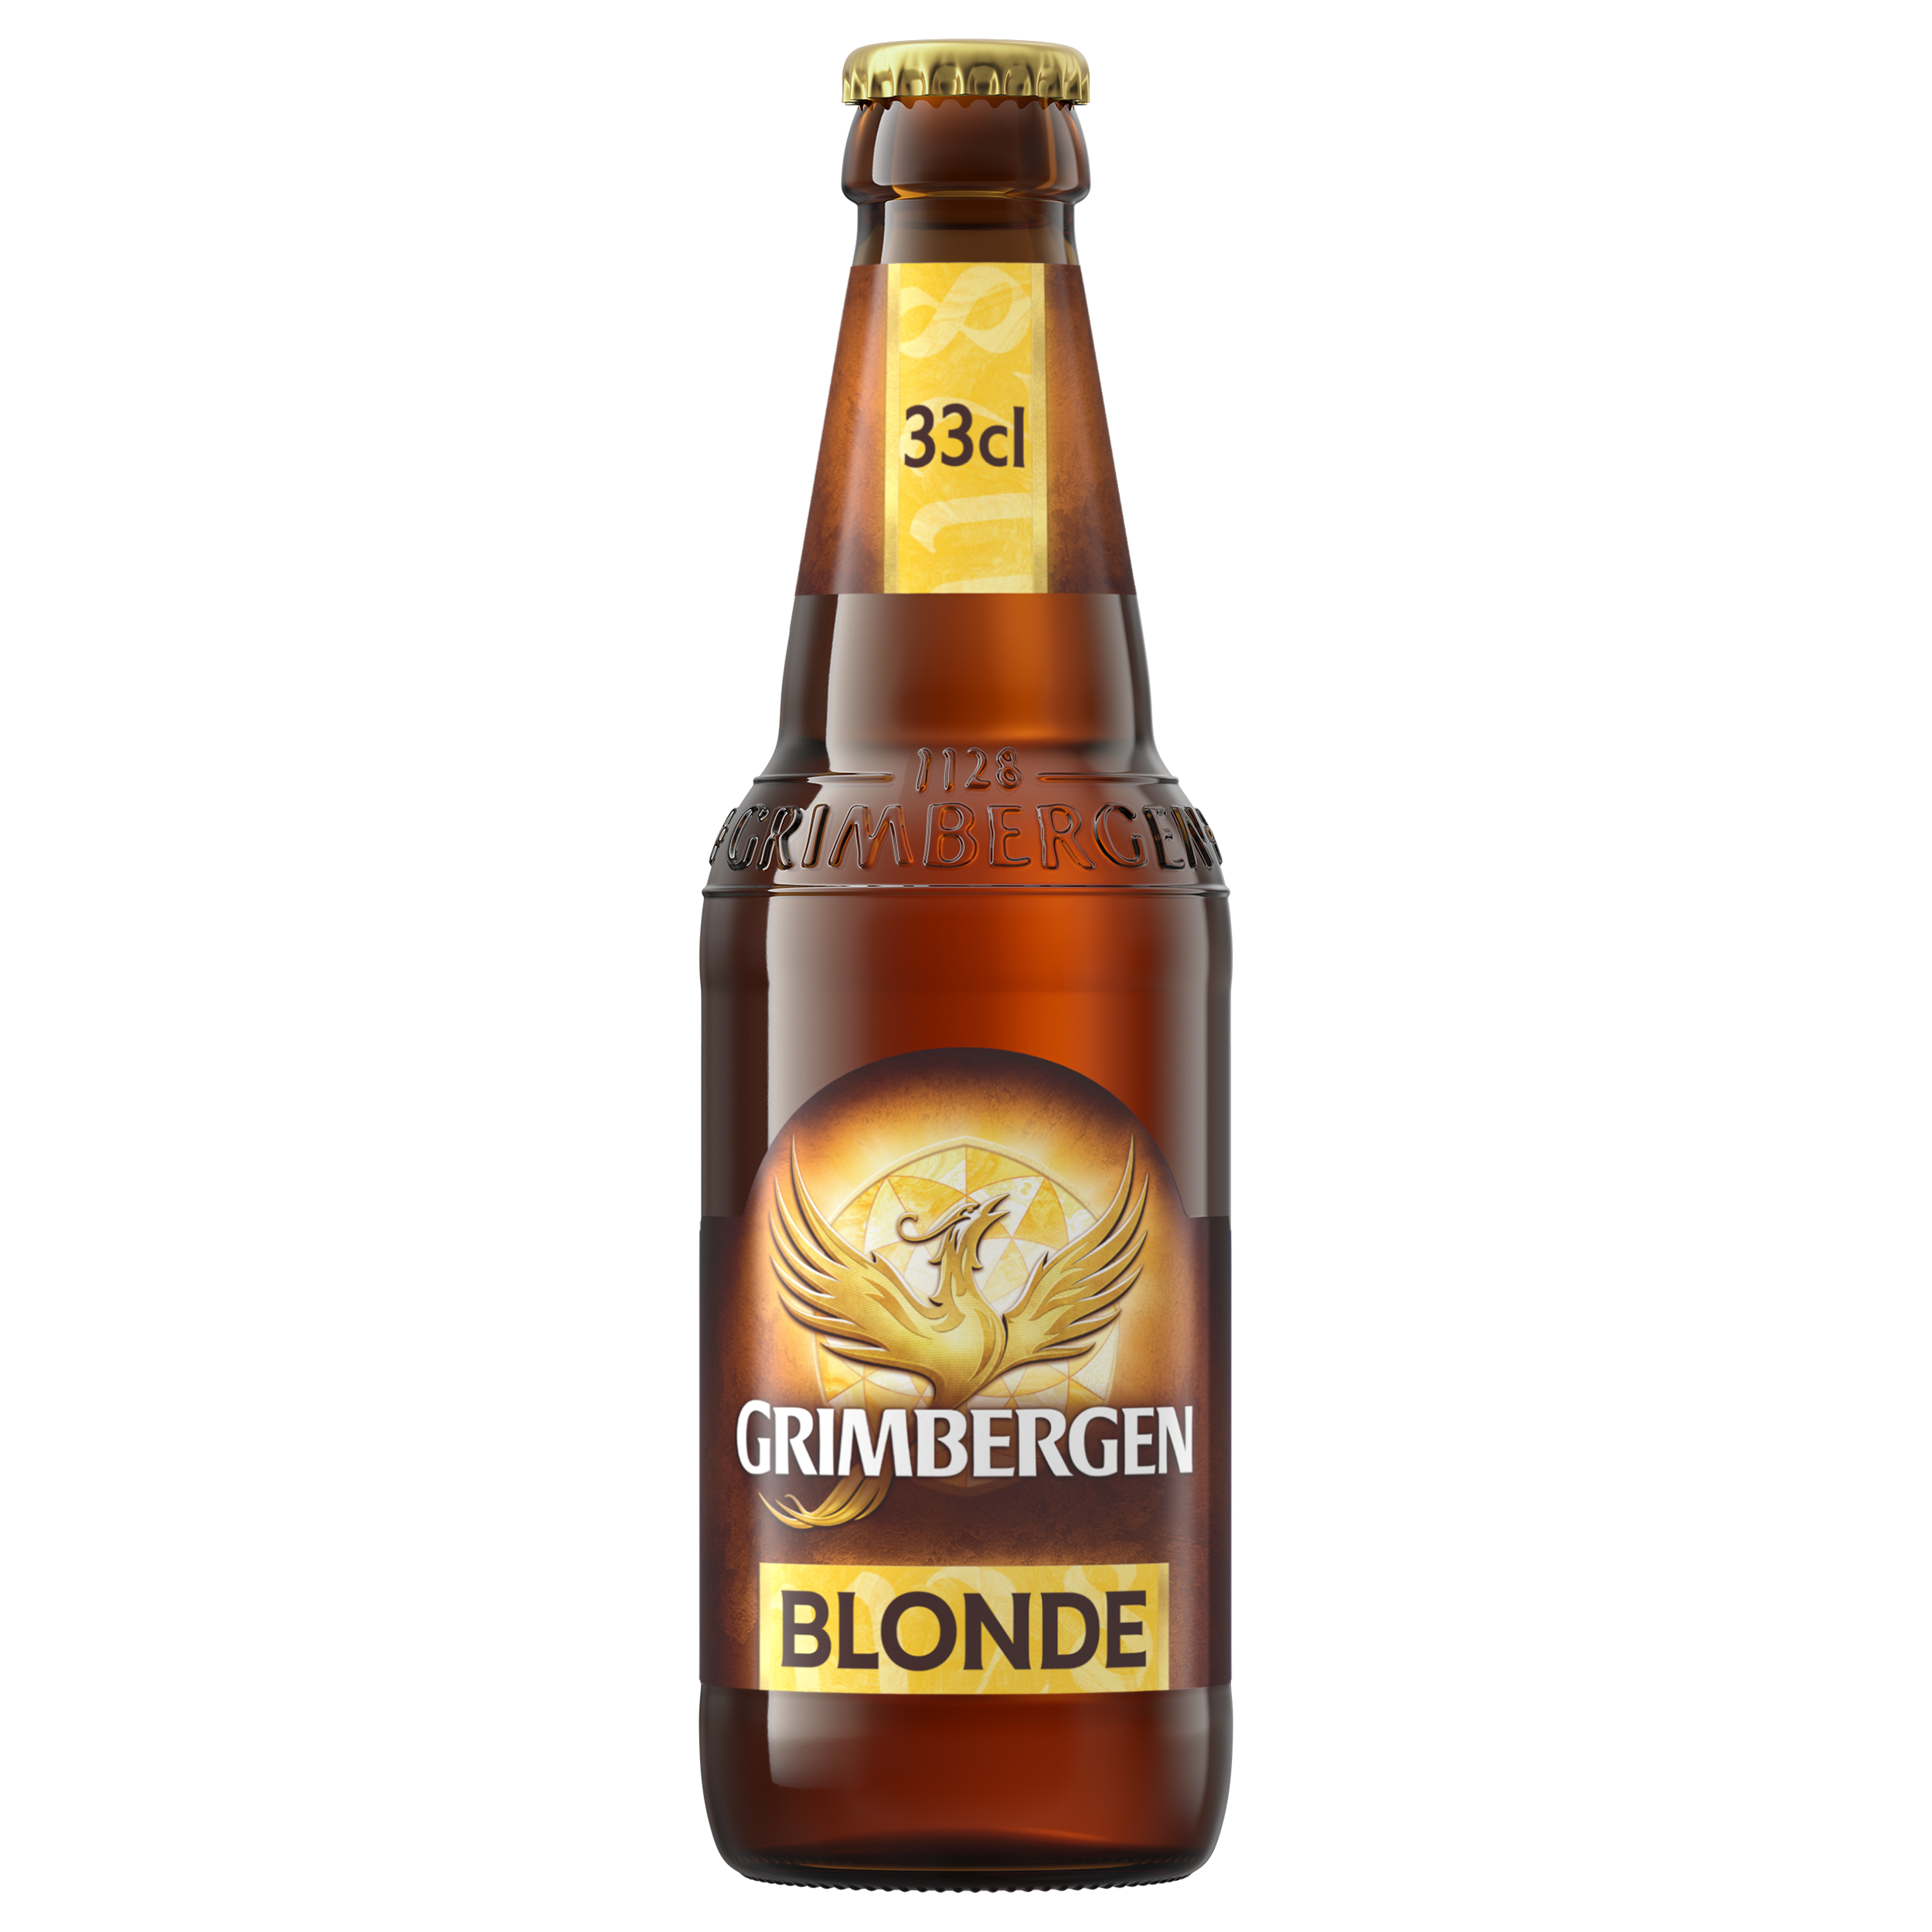 Grimbergen Blonde bottle